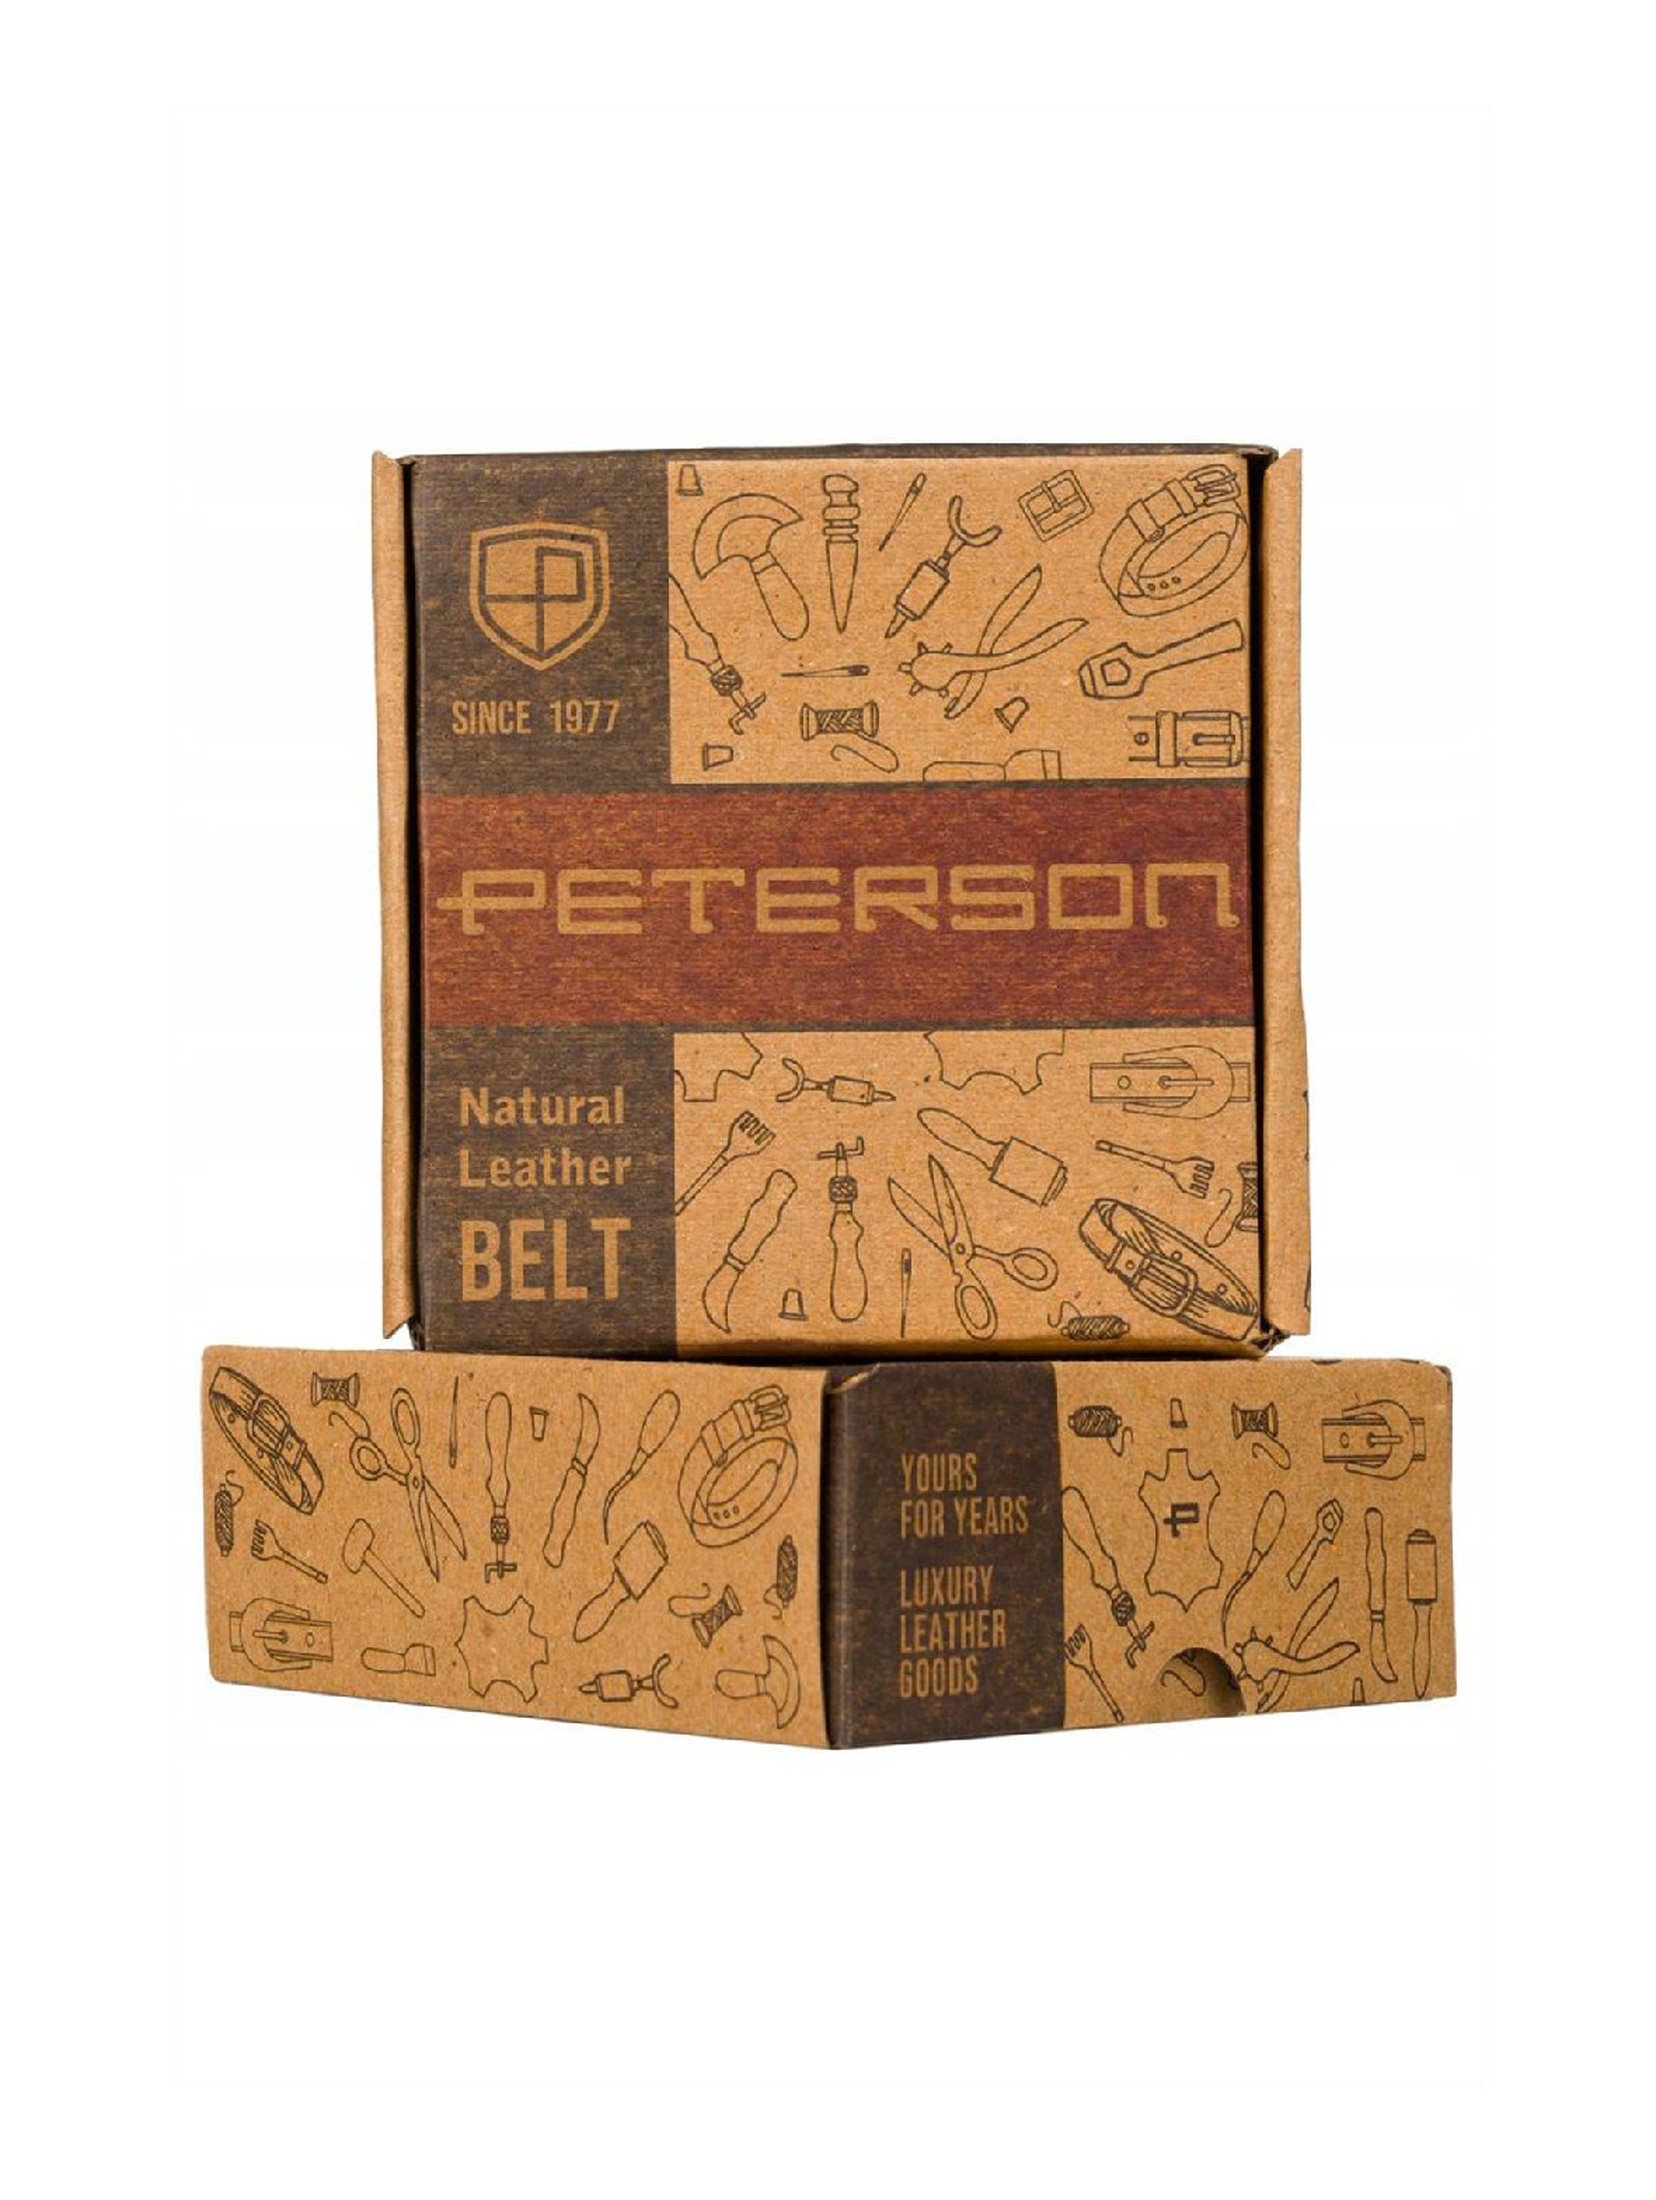 Szeroki, skórzany pasek brązowy męski z klasyczną klamrą — Peterson